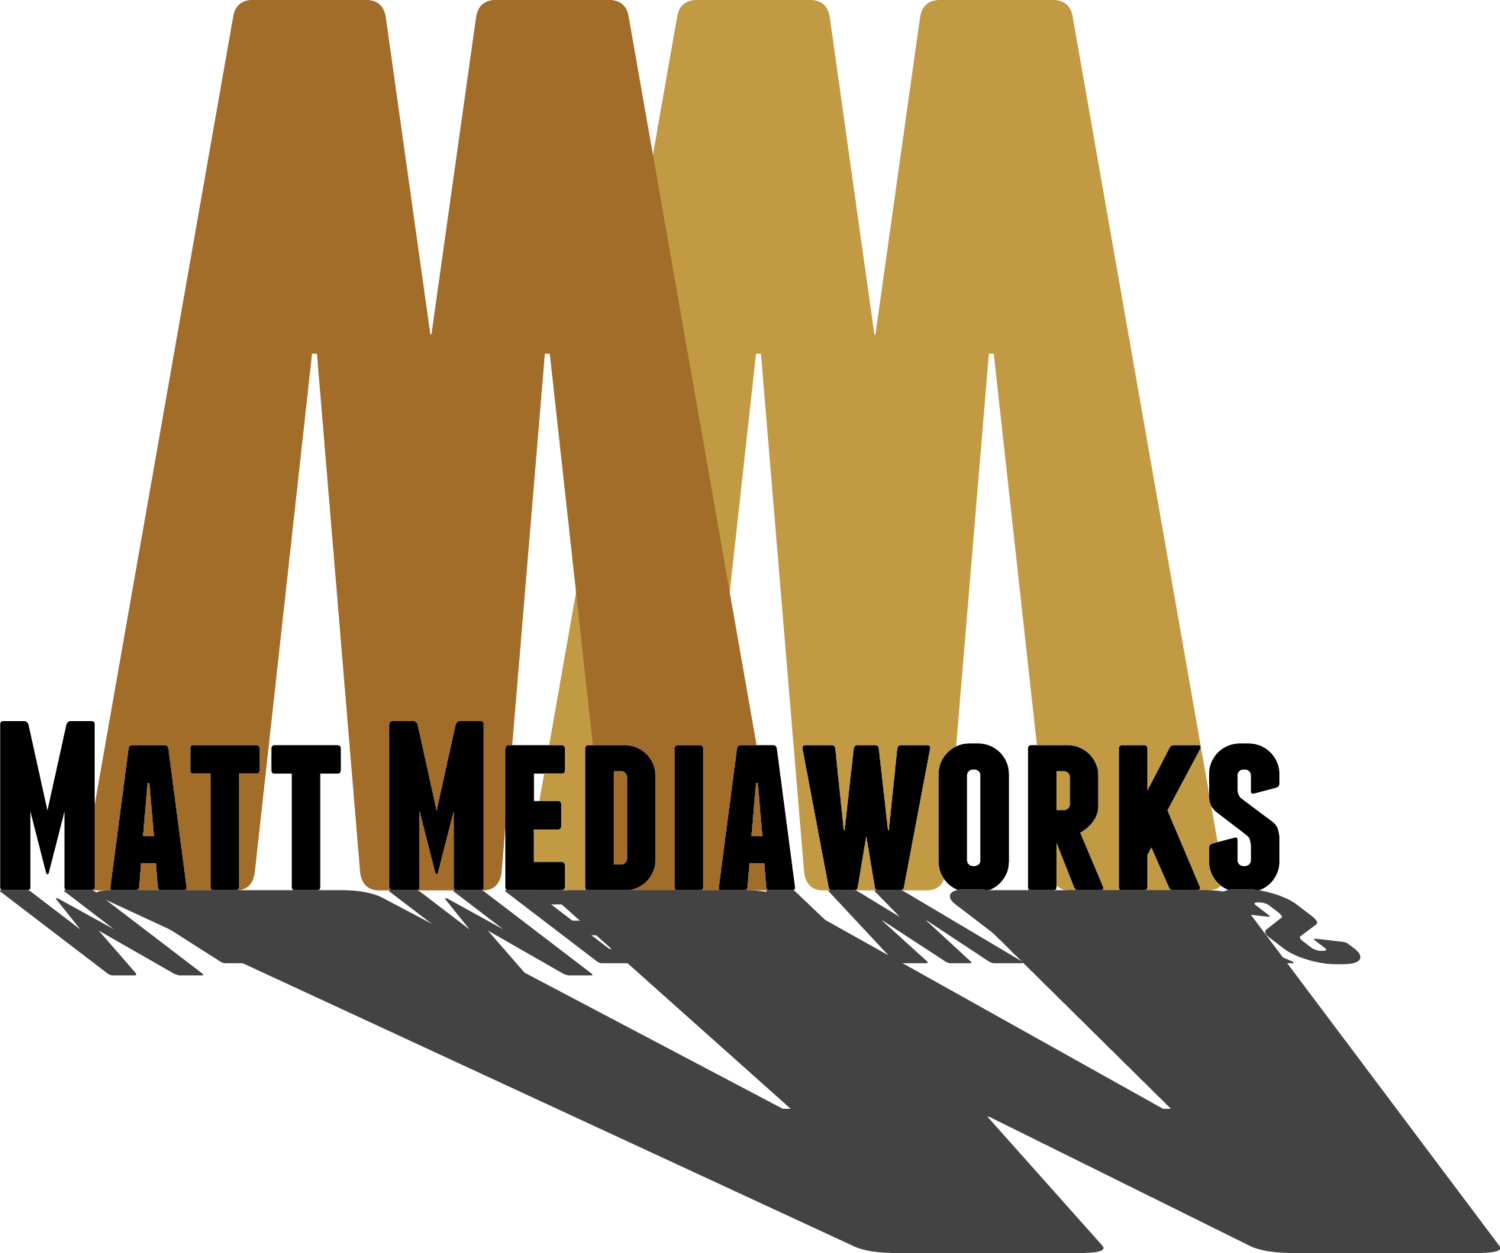 Matt Mediaworks